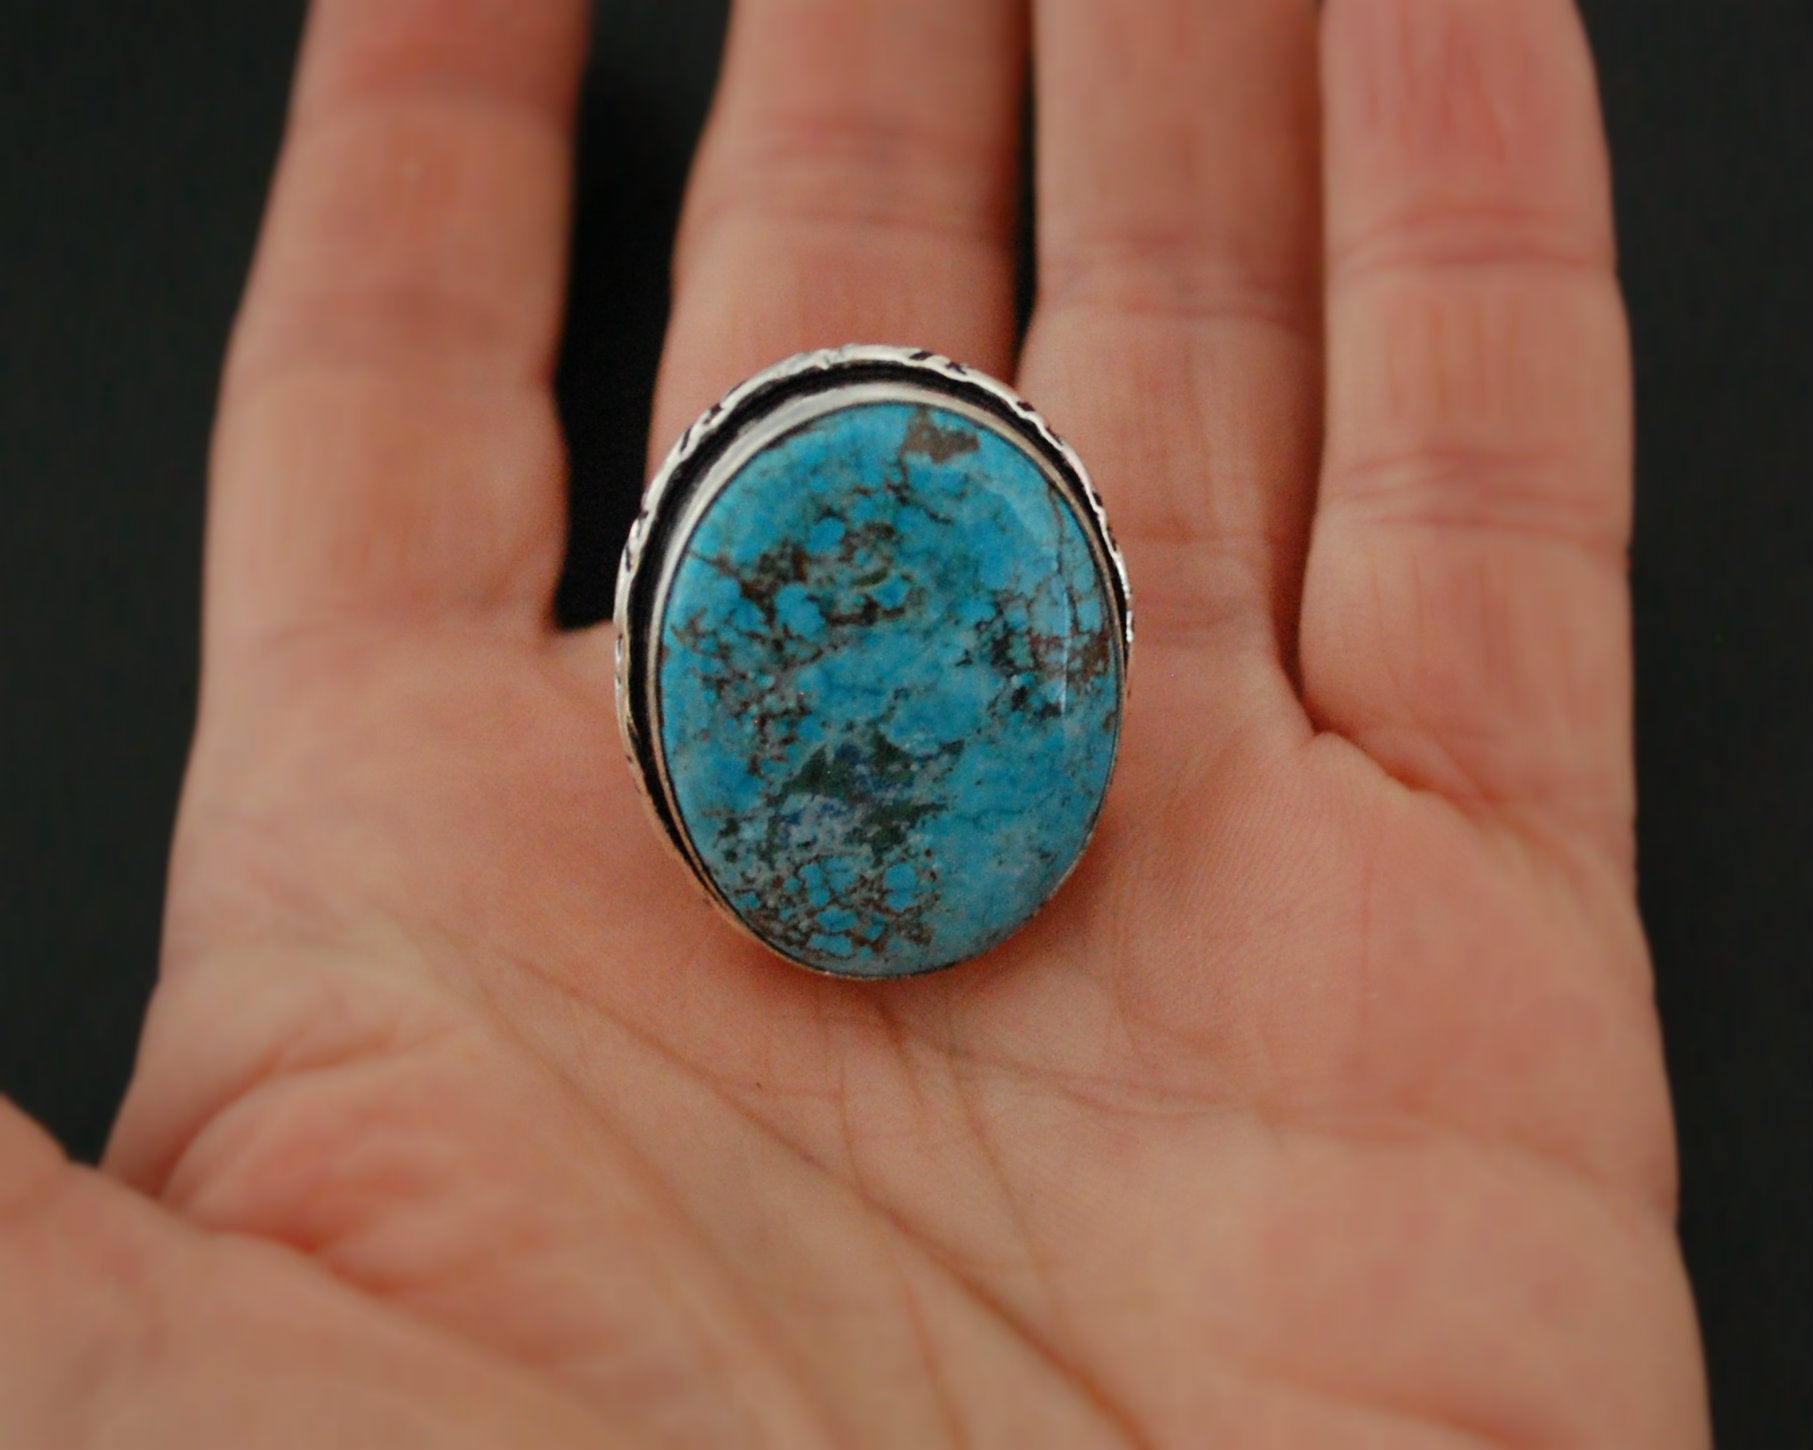 Large Turquoise Ring - Size 8.25